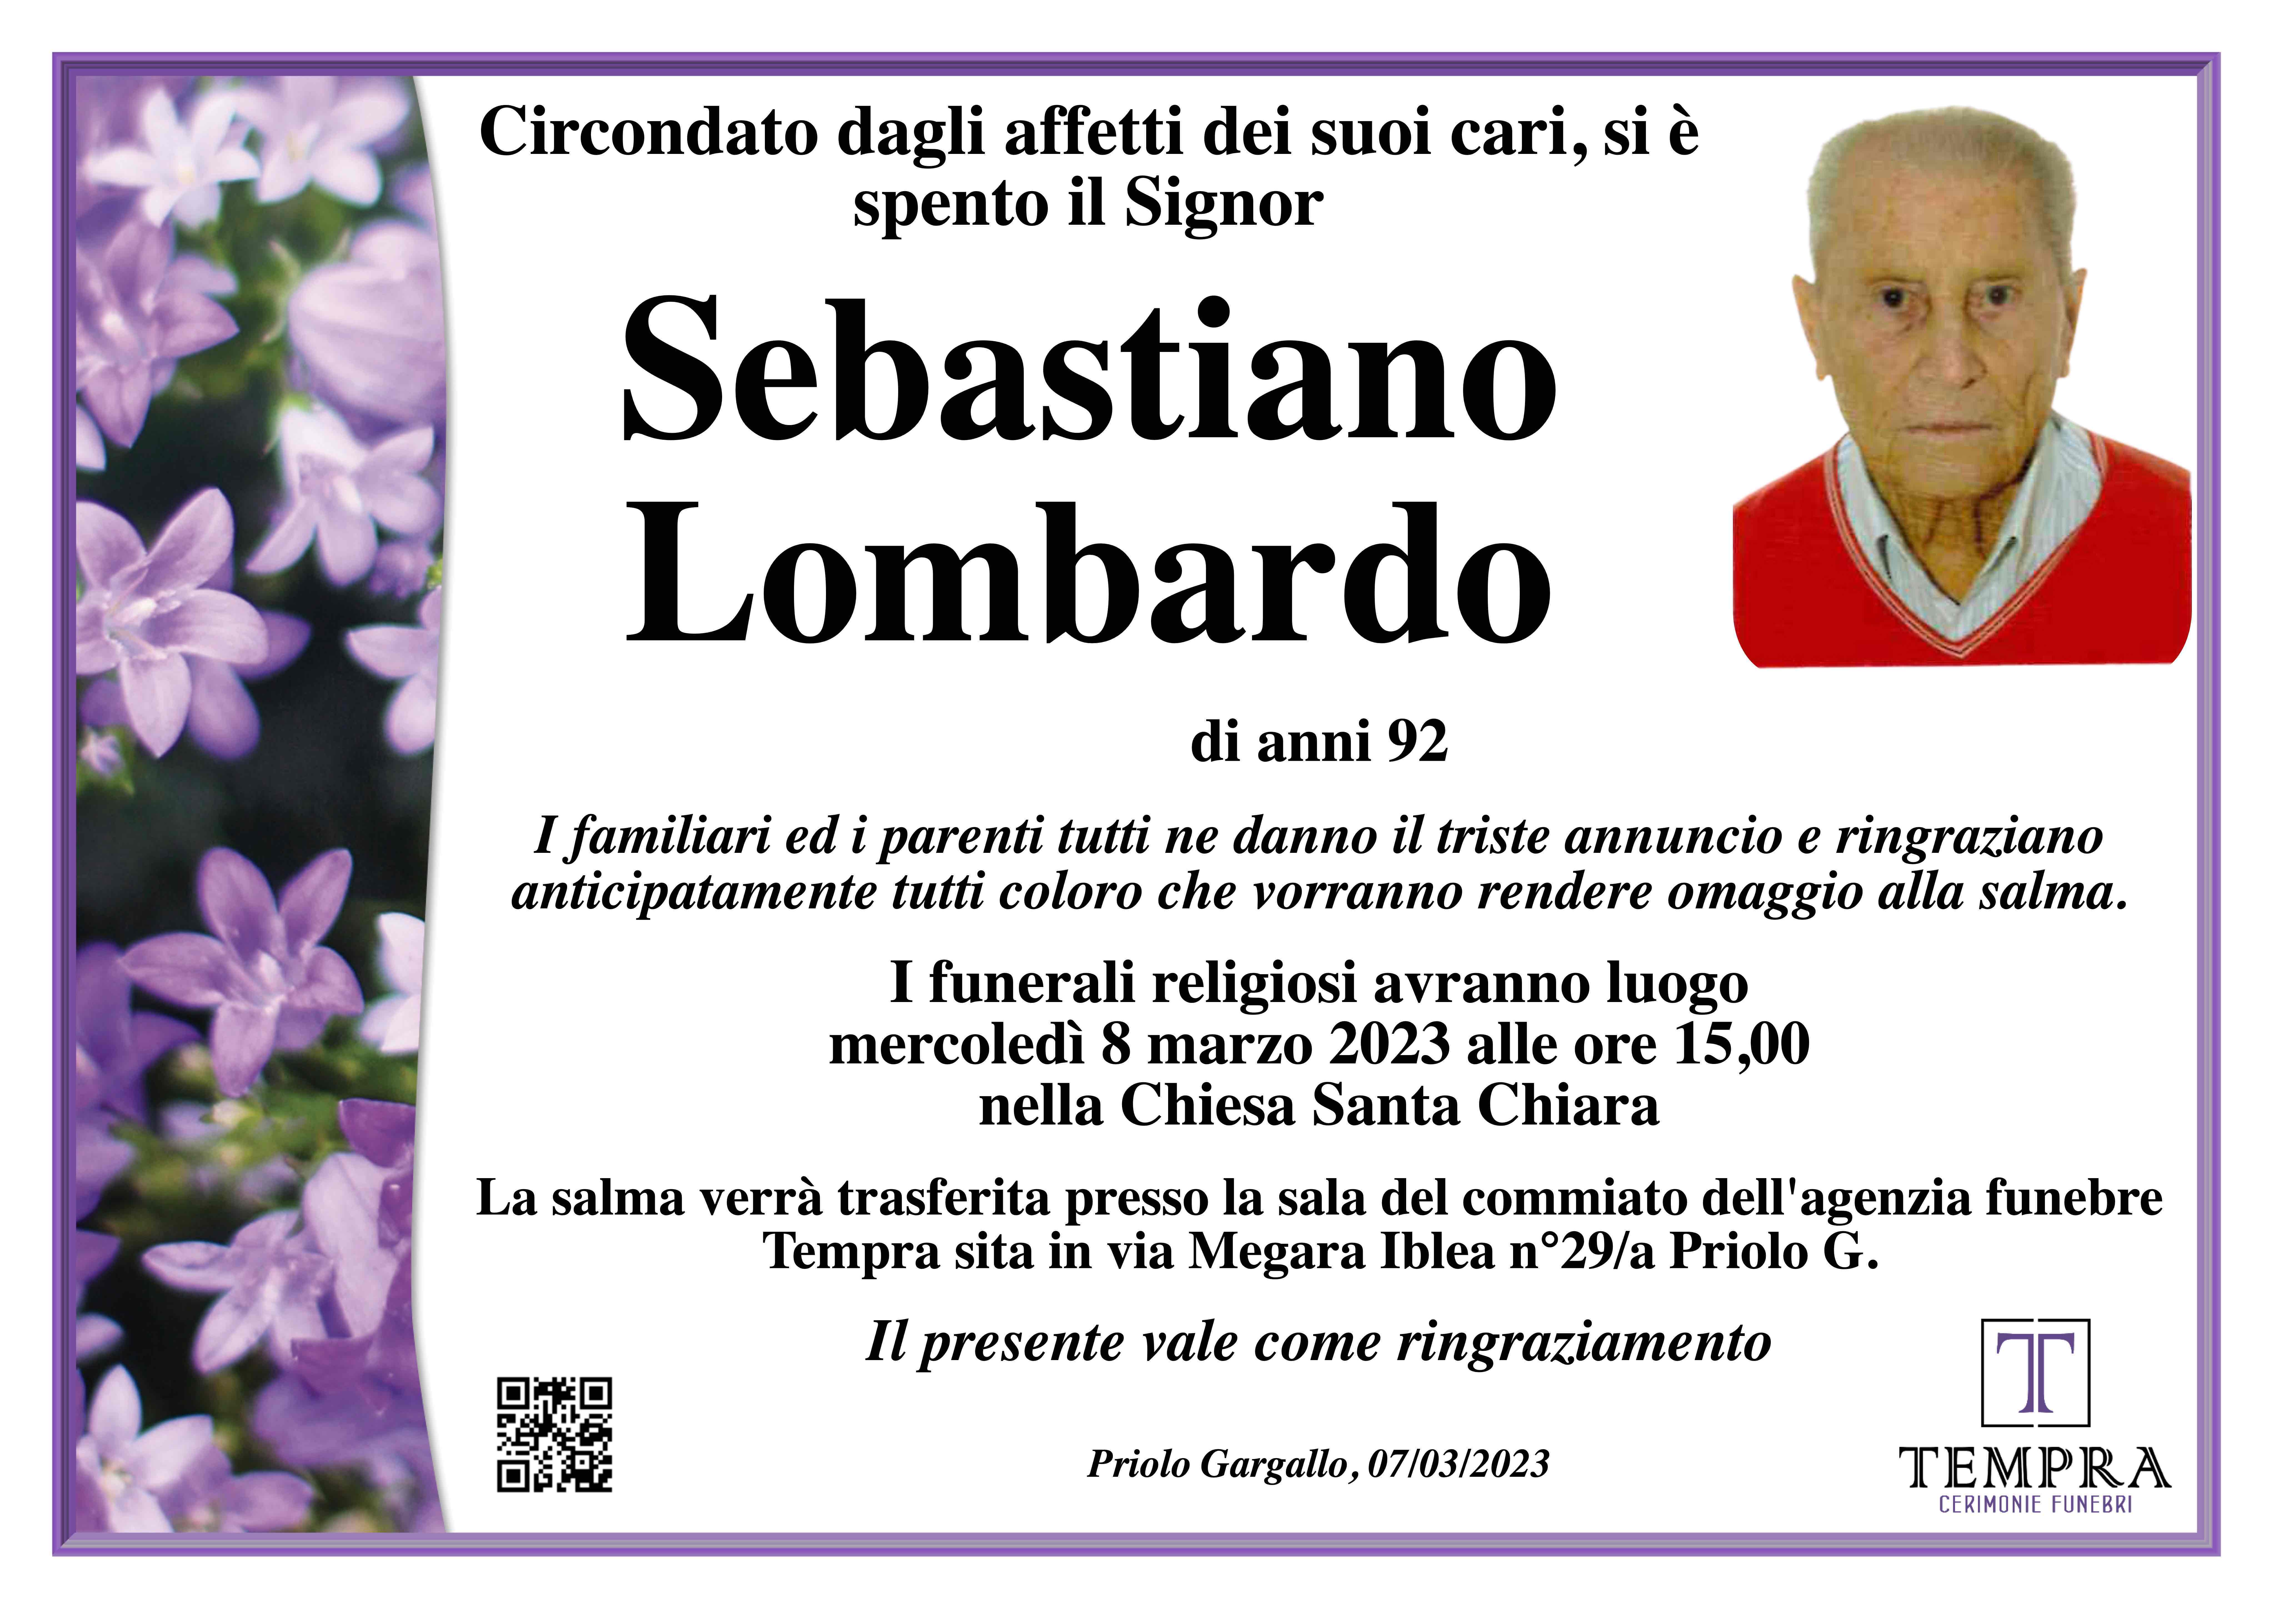 Sebastiano Lombardo